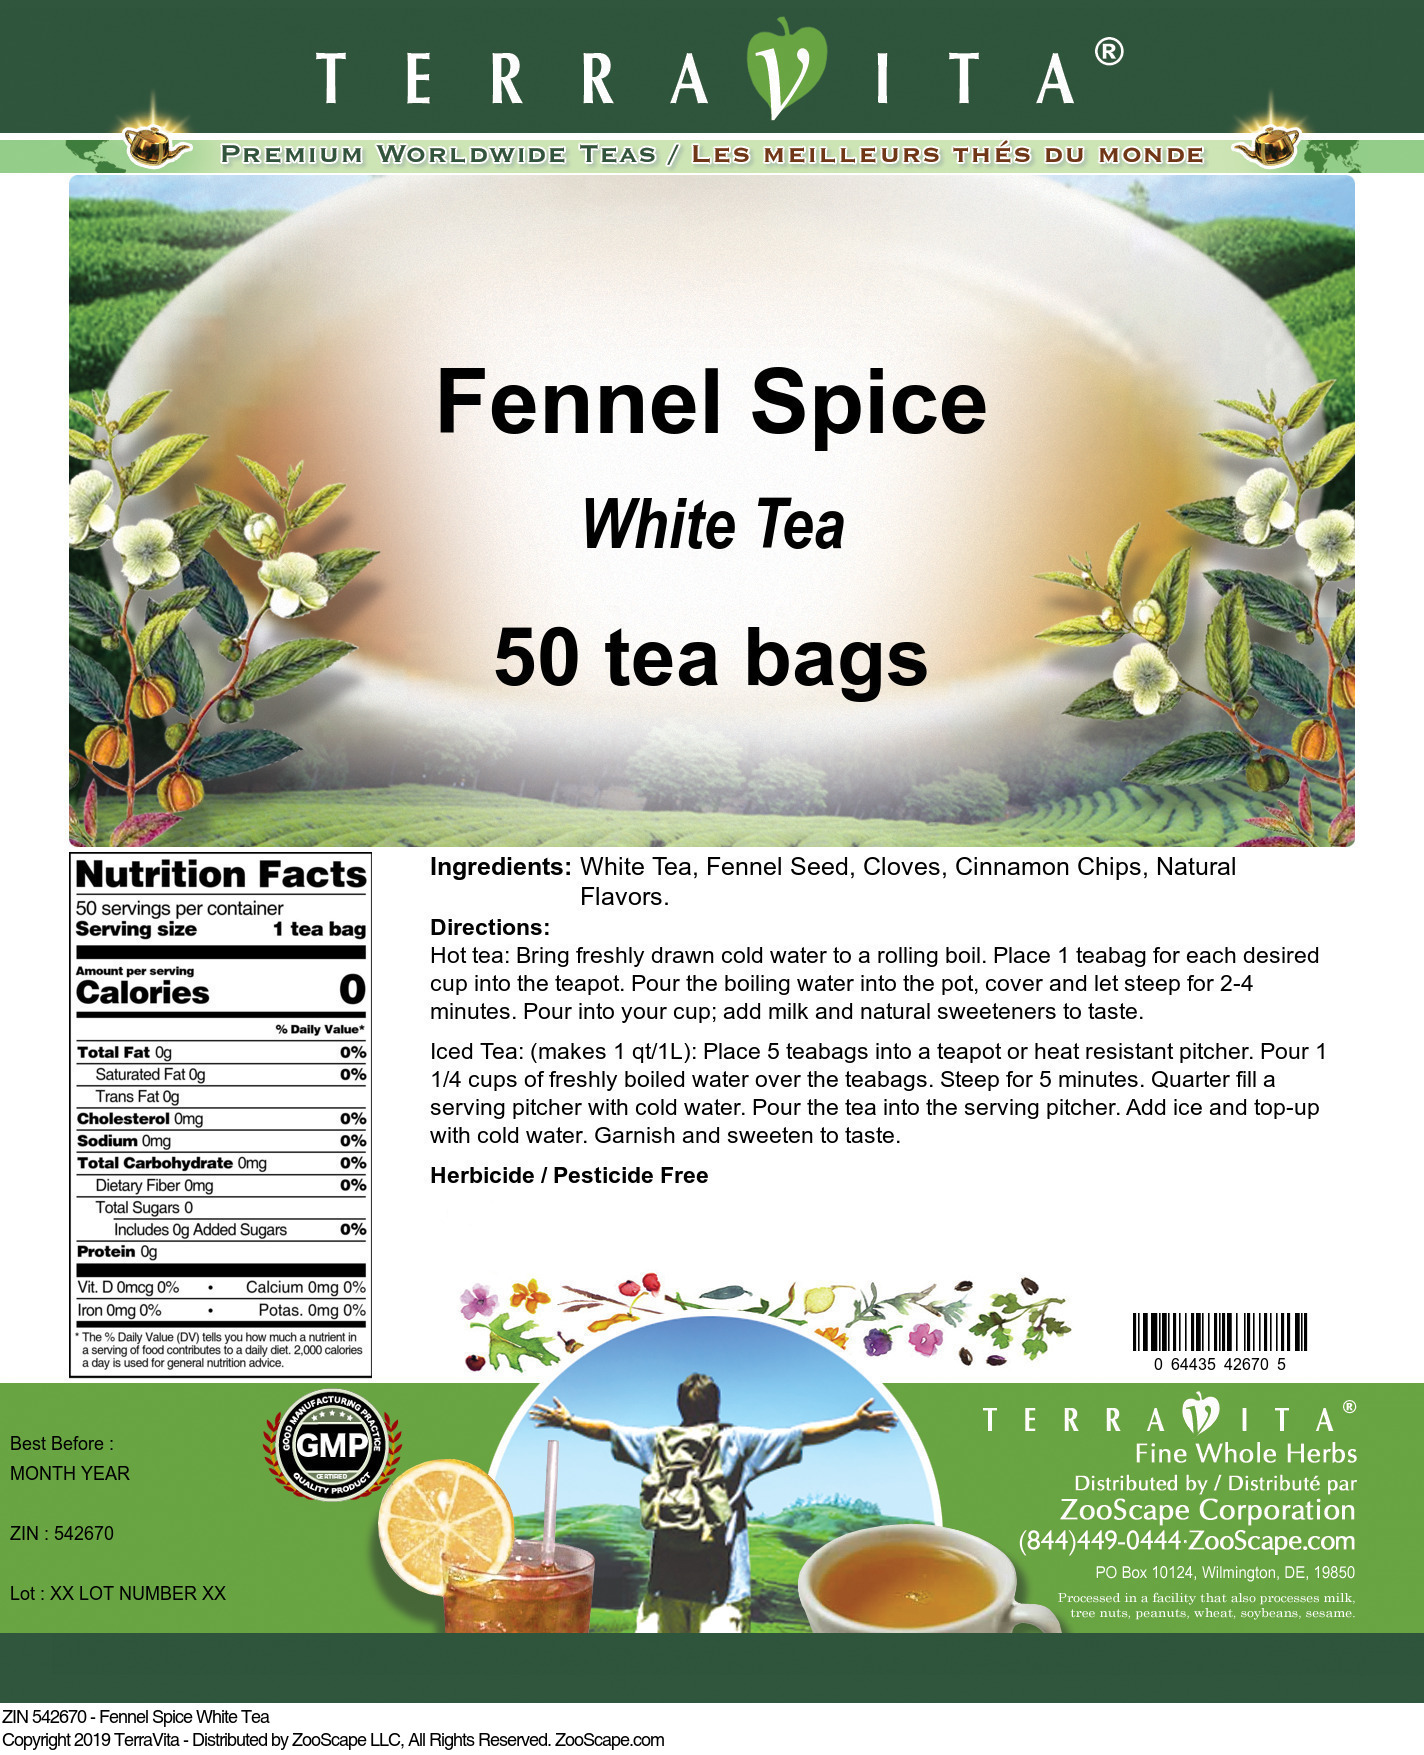 Fennel Spice White Tea - Label